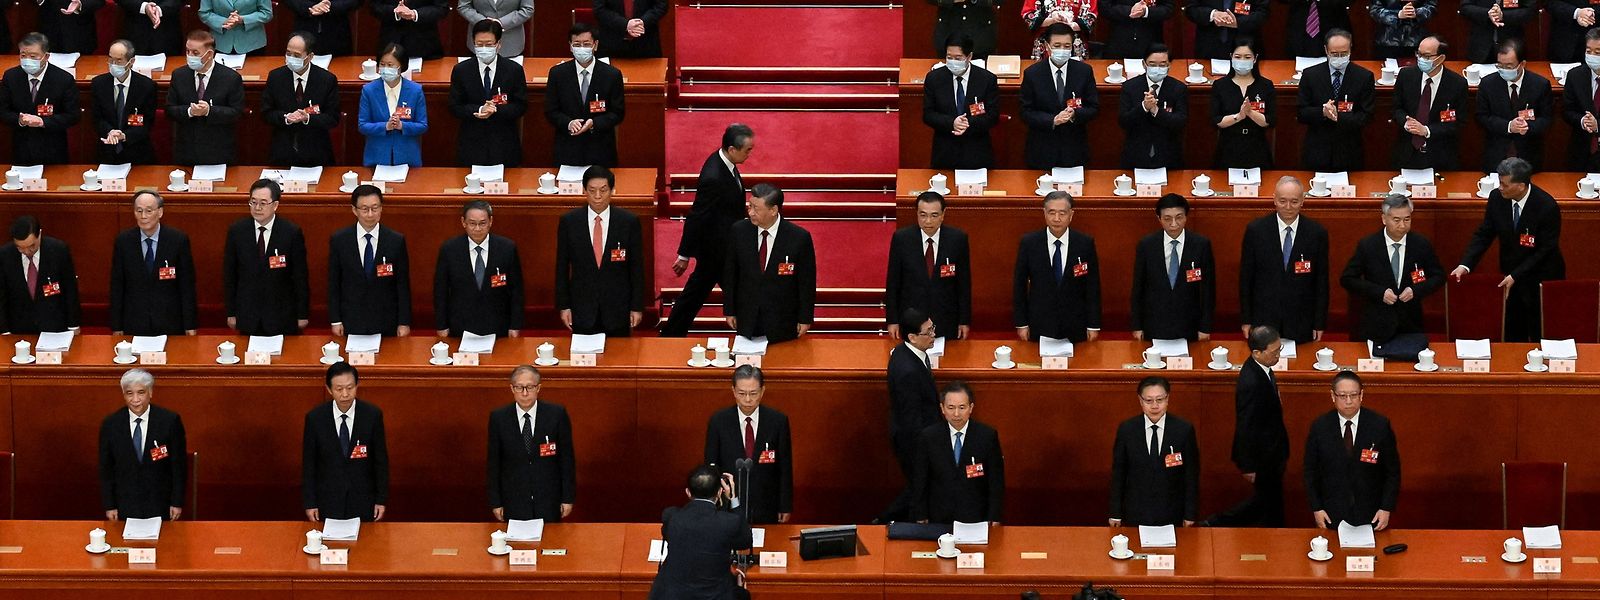 Nationalen Volkskongress in China: Die ersten Delegierten und Vertreter staatlicher Medien haben ihre Plätze in der Großen Halle des Volkes in Peking eingenommen.